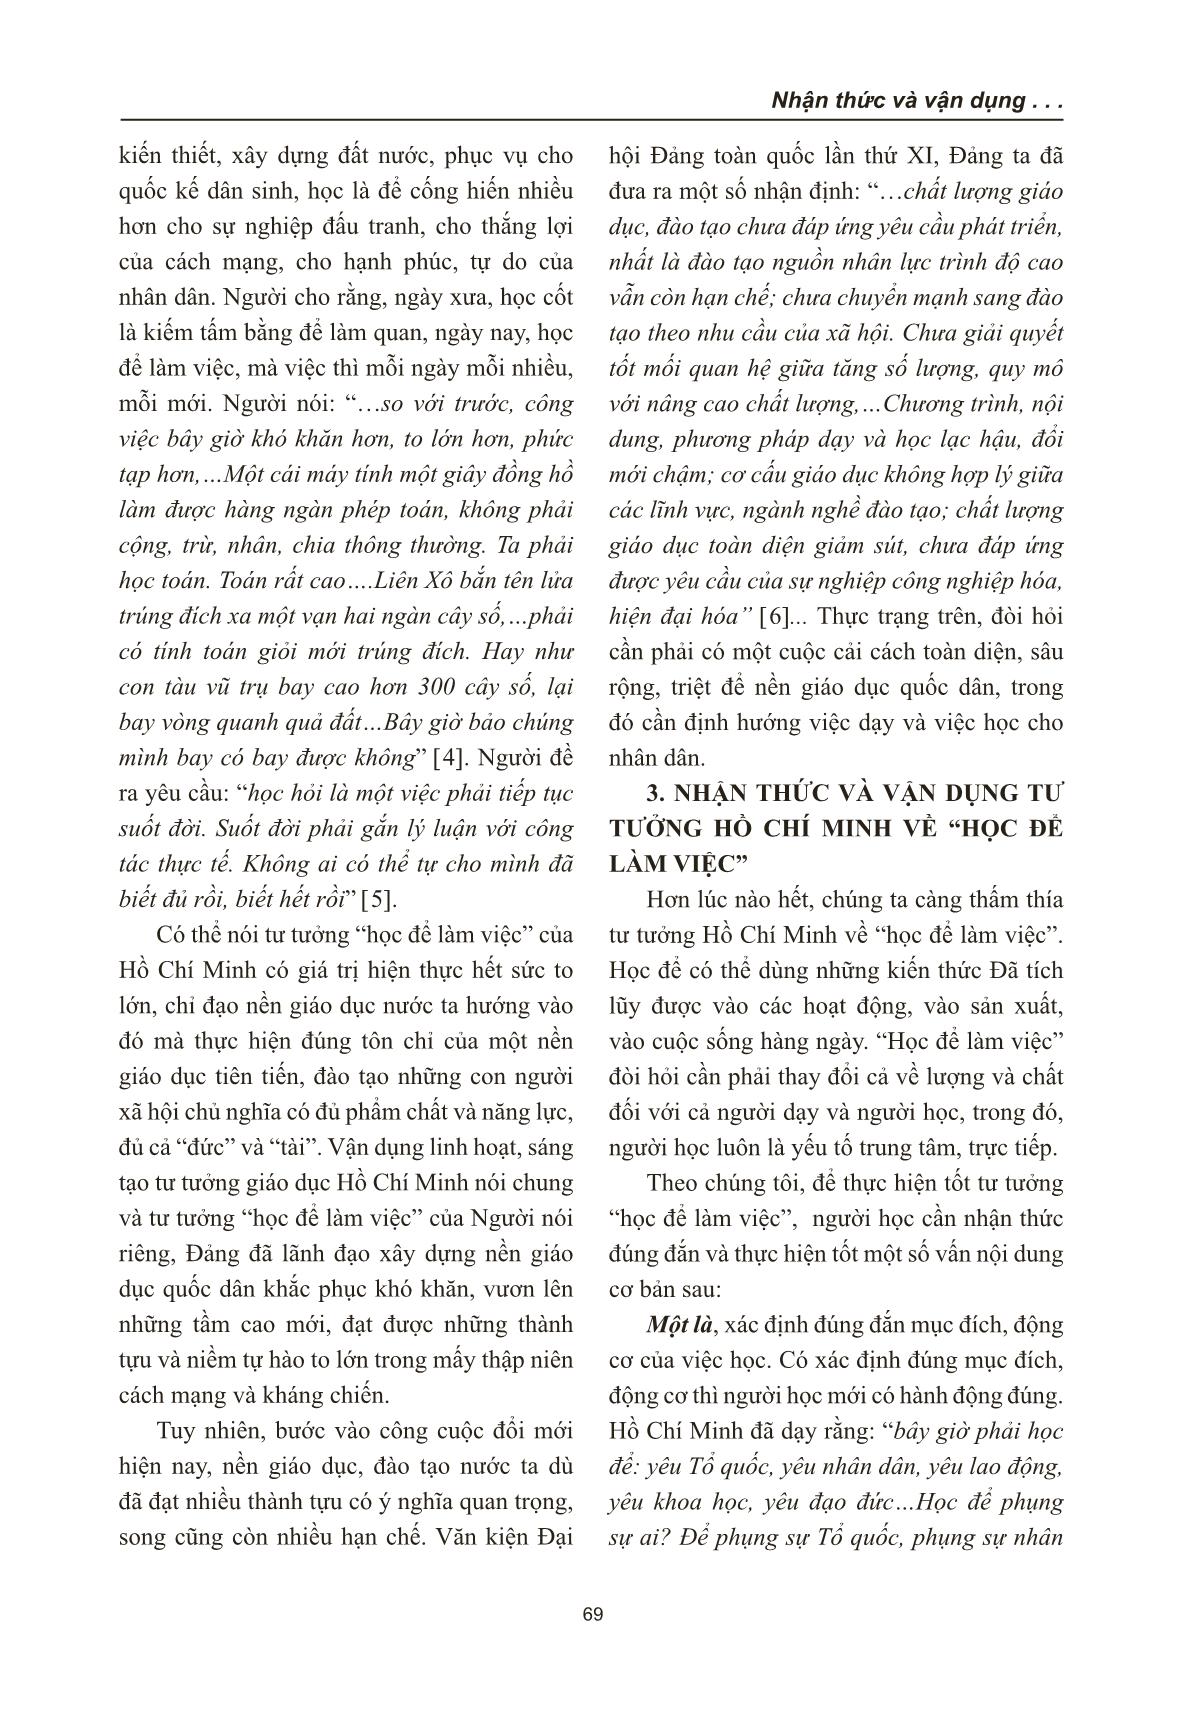 Nhận thức và vận dụng tư tưởng Hồ Chí Minh về “Học để làm việc” trang 3